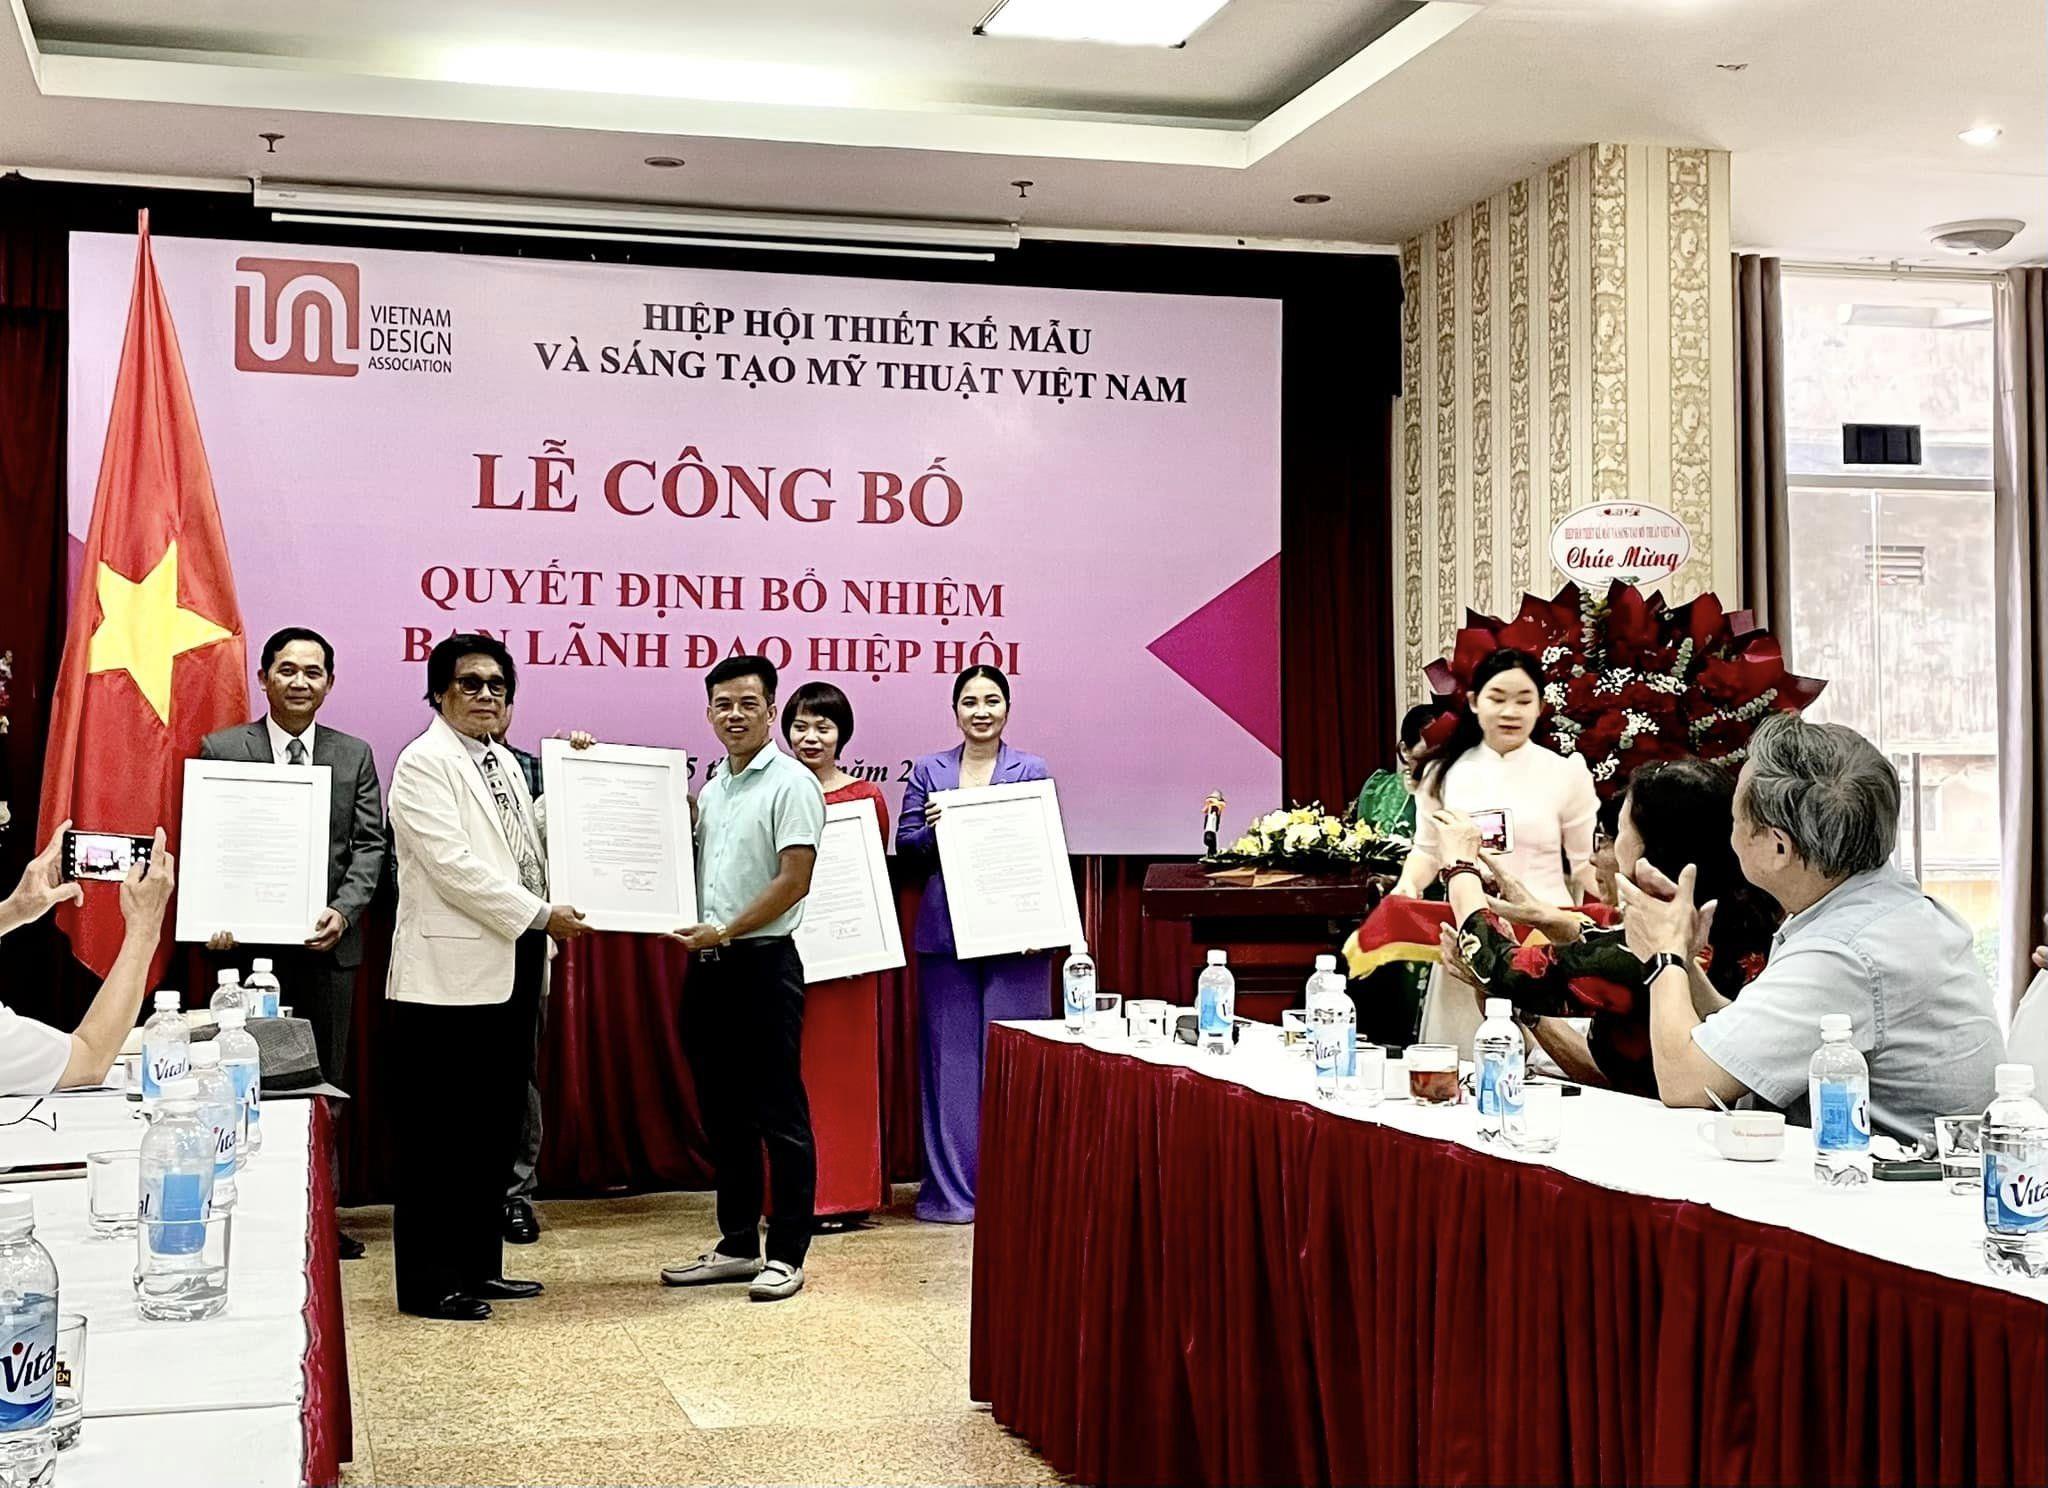 Viện trưởng Phạm Xuân Hải giữ chức vụ Phó Chủ tịch Hiệp hội Thiết kế mẫu và Sáng tạo Mỹ thuật Việt Nam